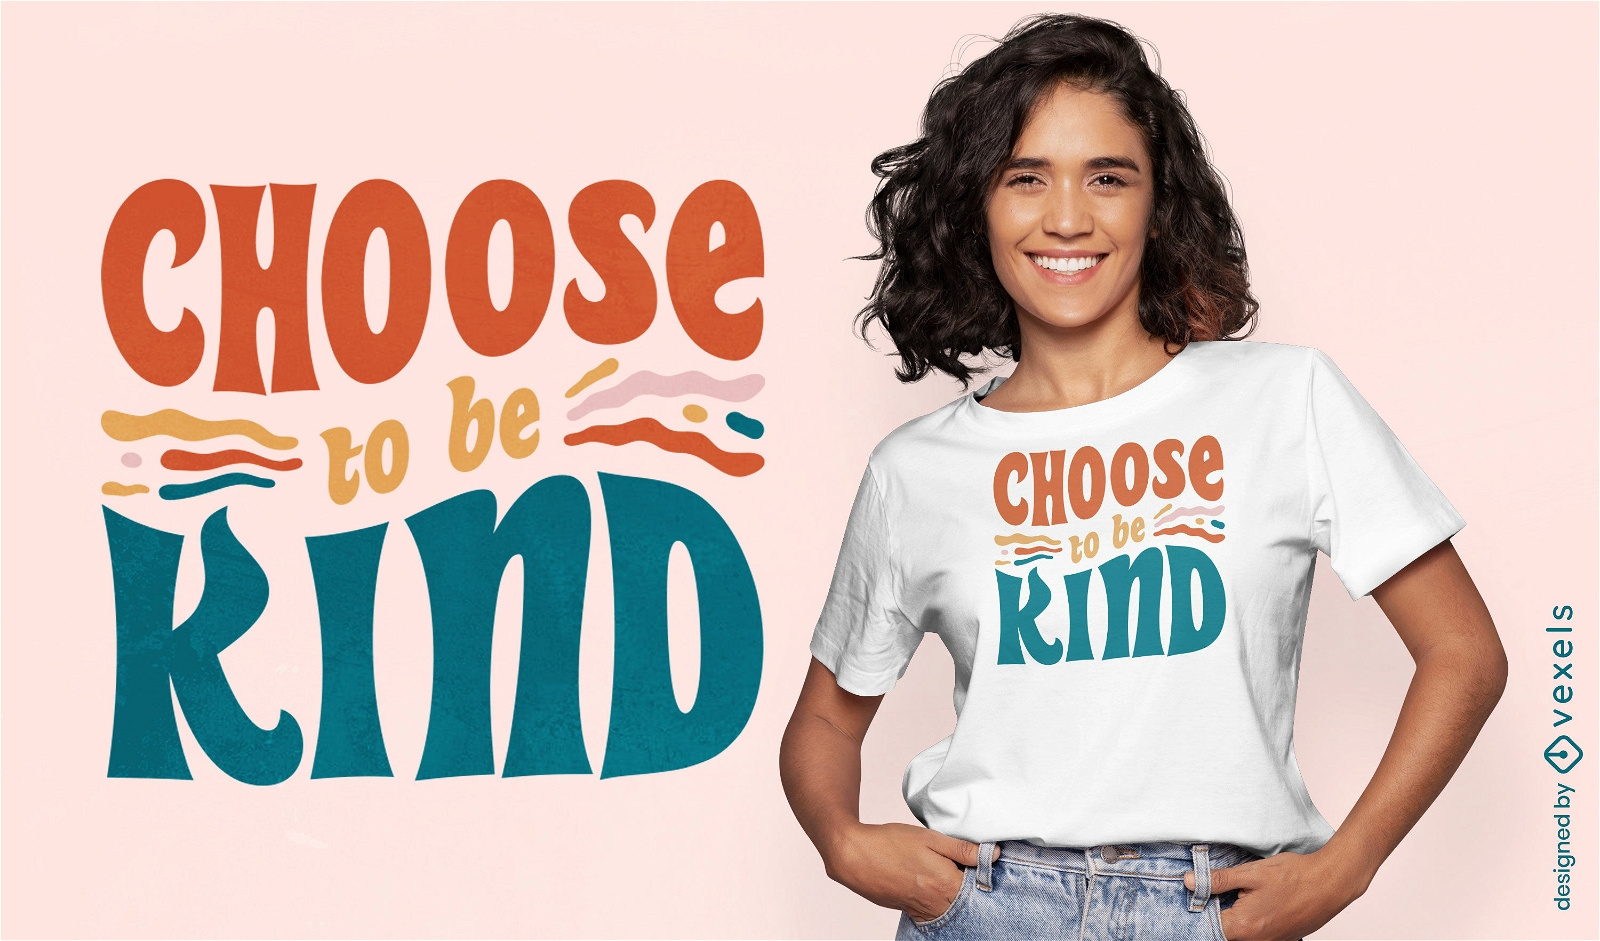 Escolha ser gentil design de camiseta com cita??o de positividade